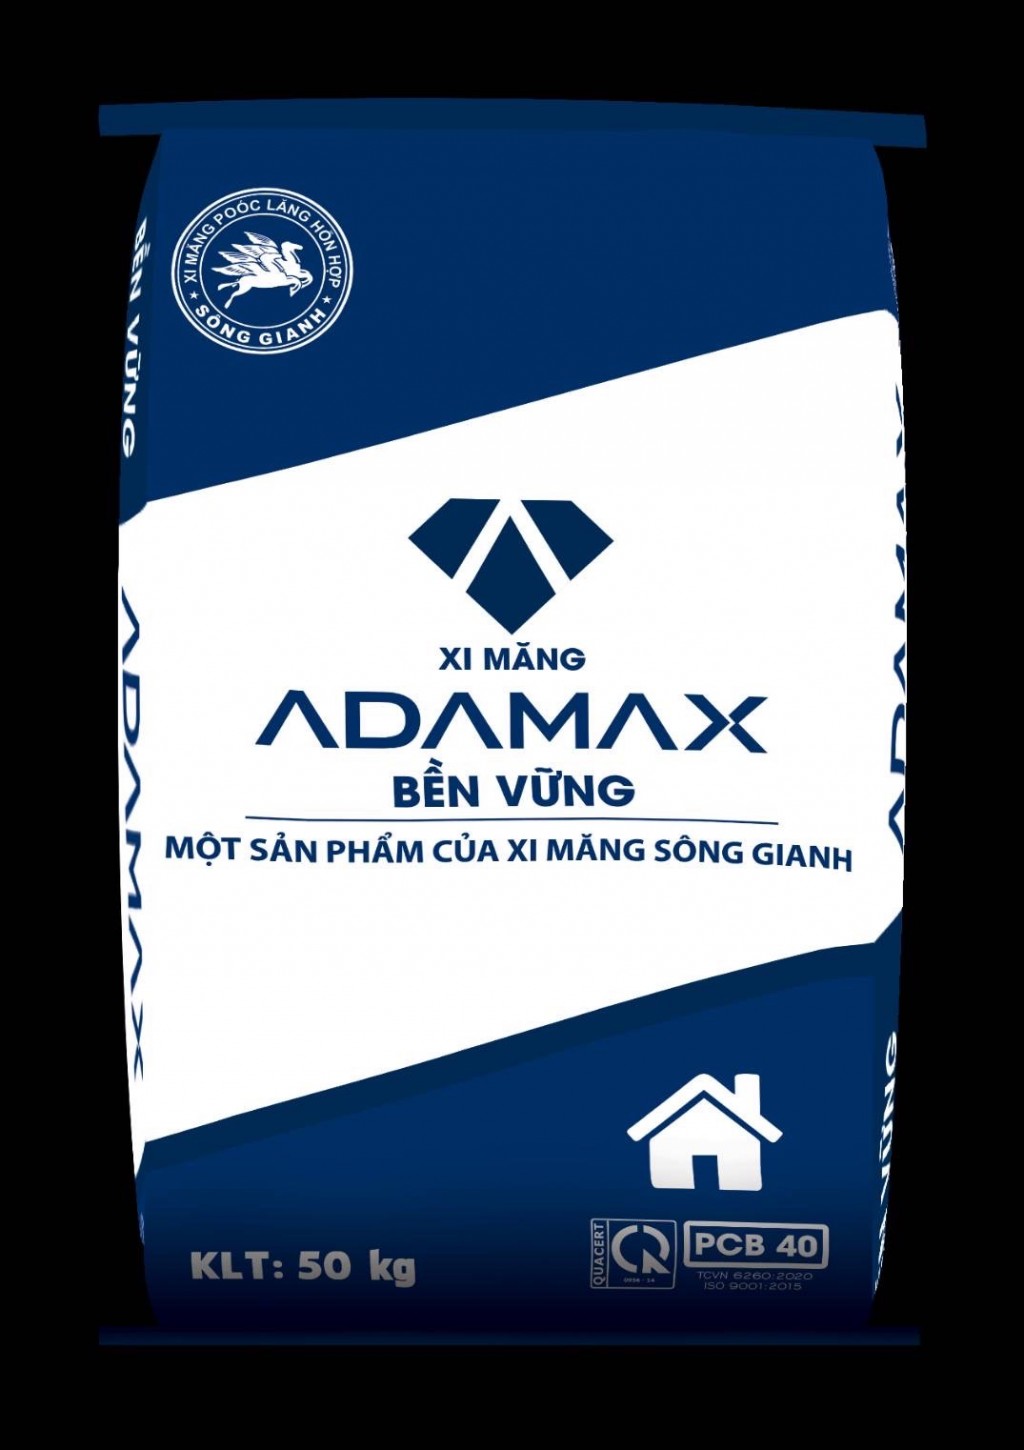 Nhãn hiệu Xi măng ADAMAX tại Việt Nam